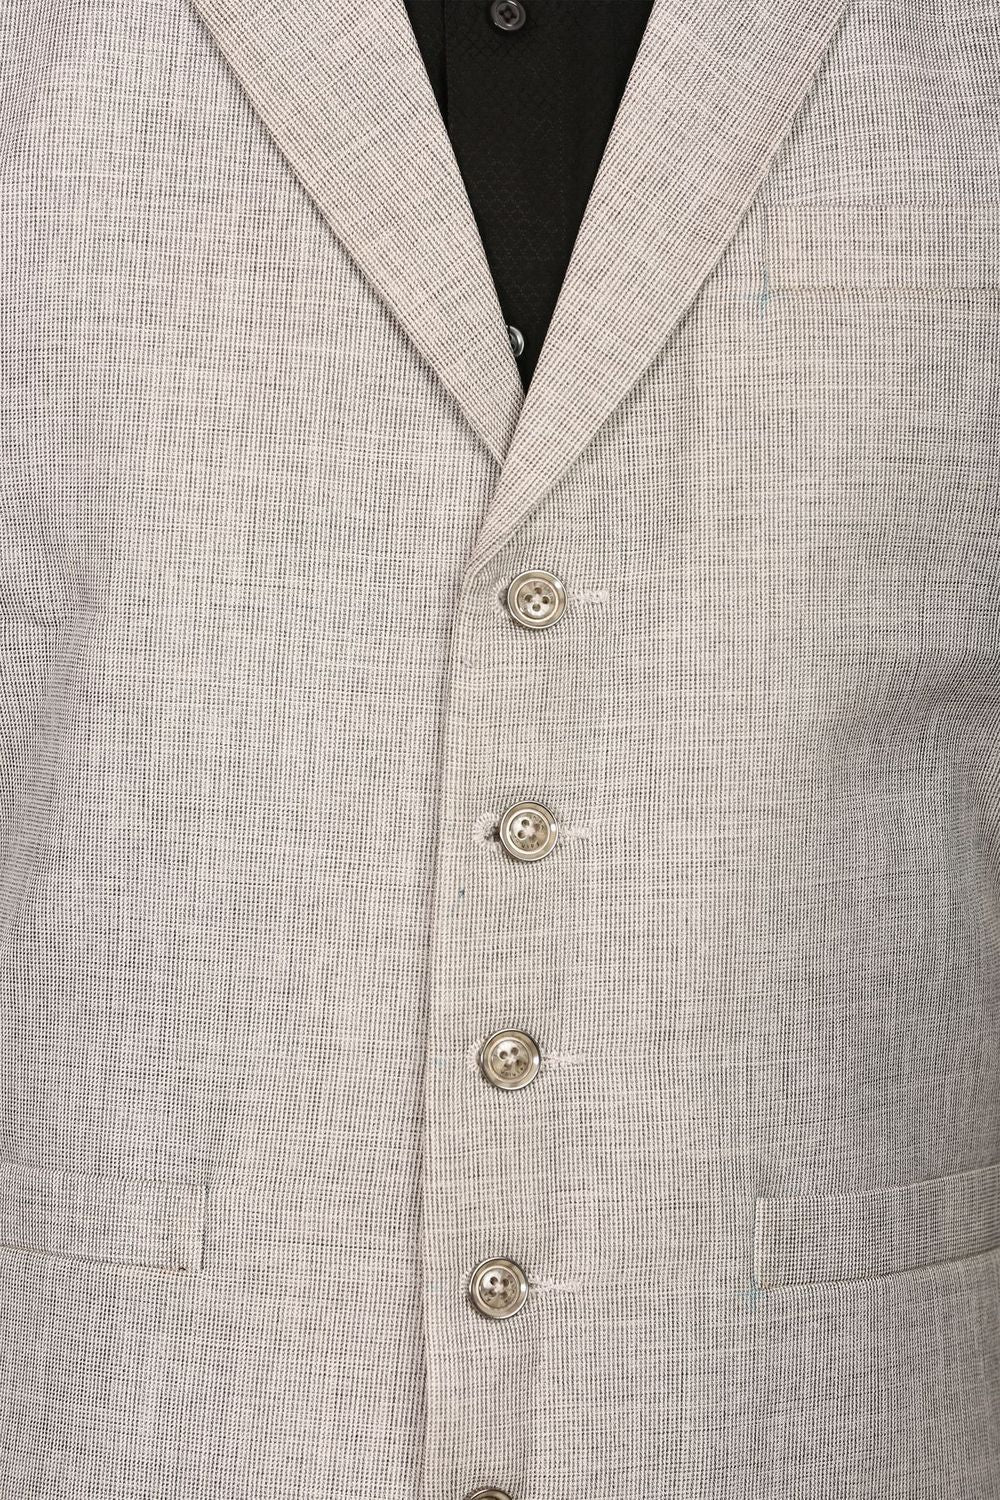 Linen Blend Silver Vest and Pant Set